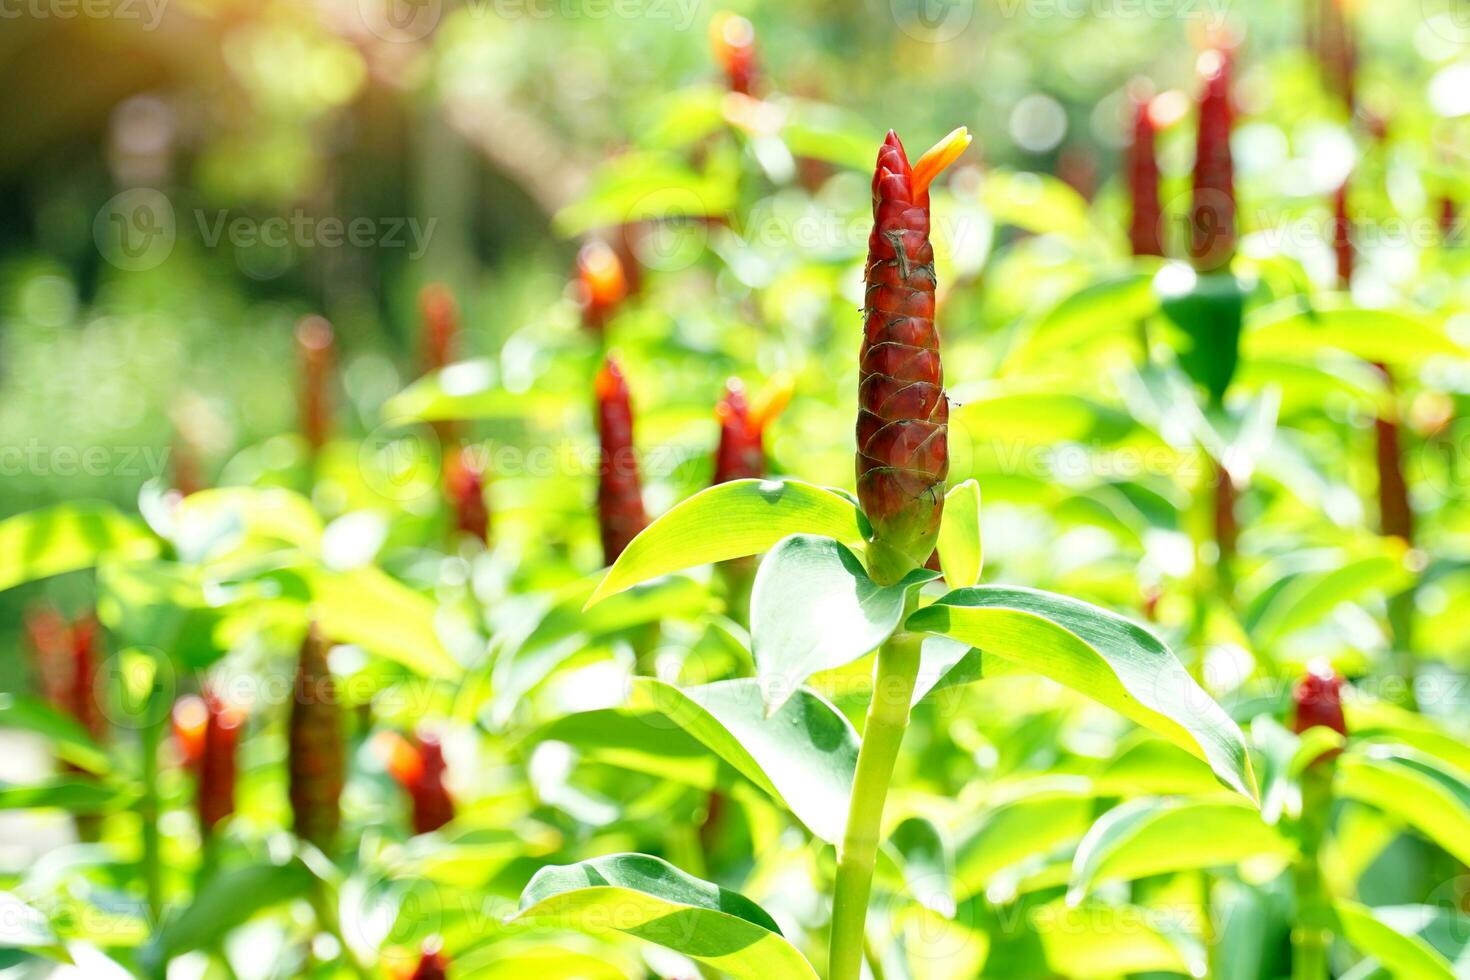 costus woodsonii, costus speciosus ist eine krautige Pflanze. Unter der Erde befindet sich ein Rhizom, oft in Büscheln, mit roten Blüten, die Ingwerblüten ähneln. foto